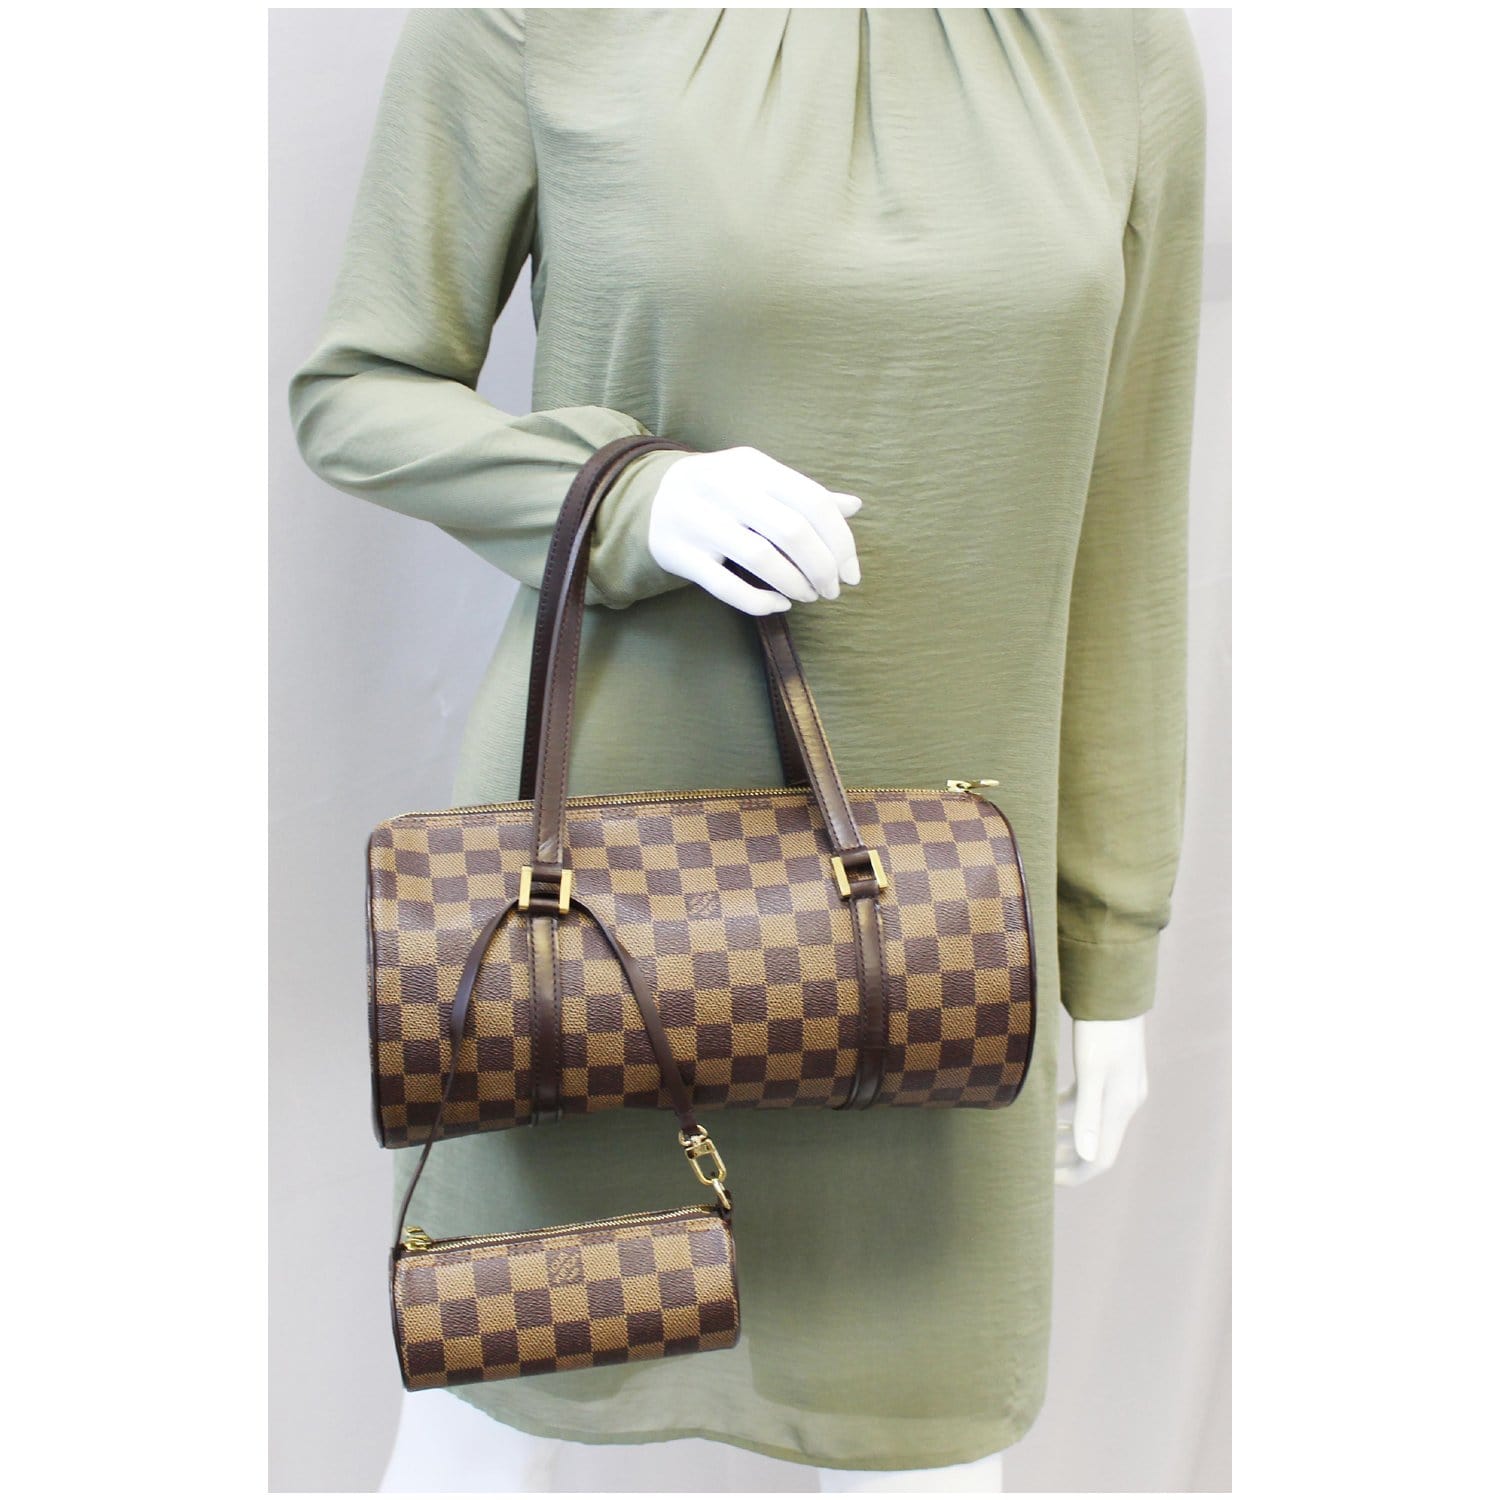 Louis Vuitton Papillon 30 Damier Ebene Shoulder Handbag